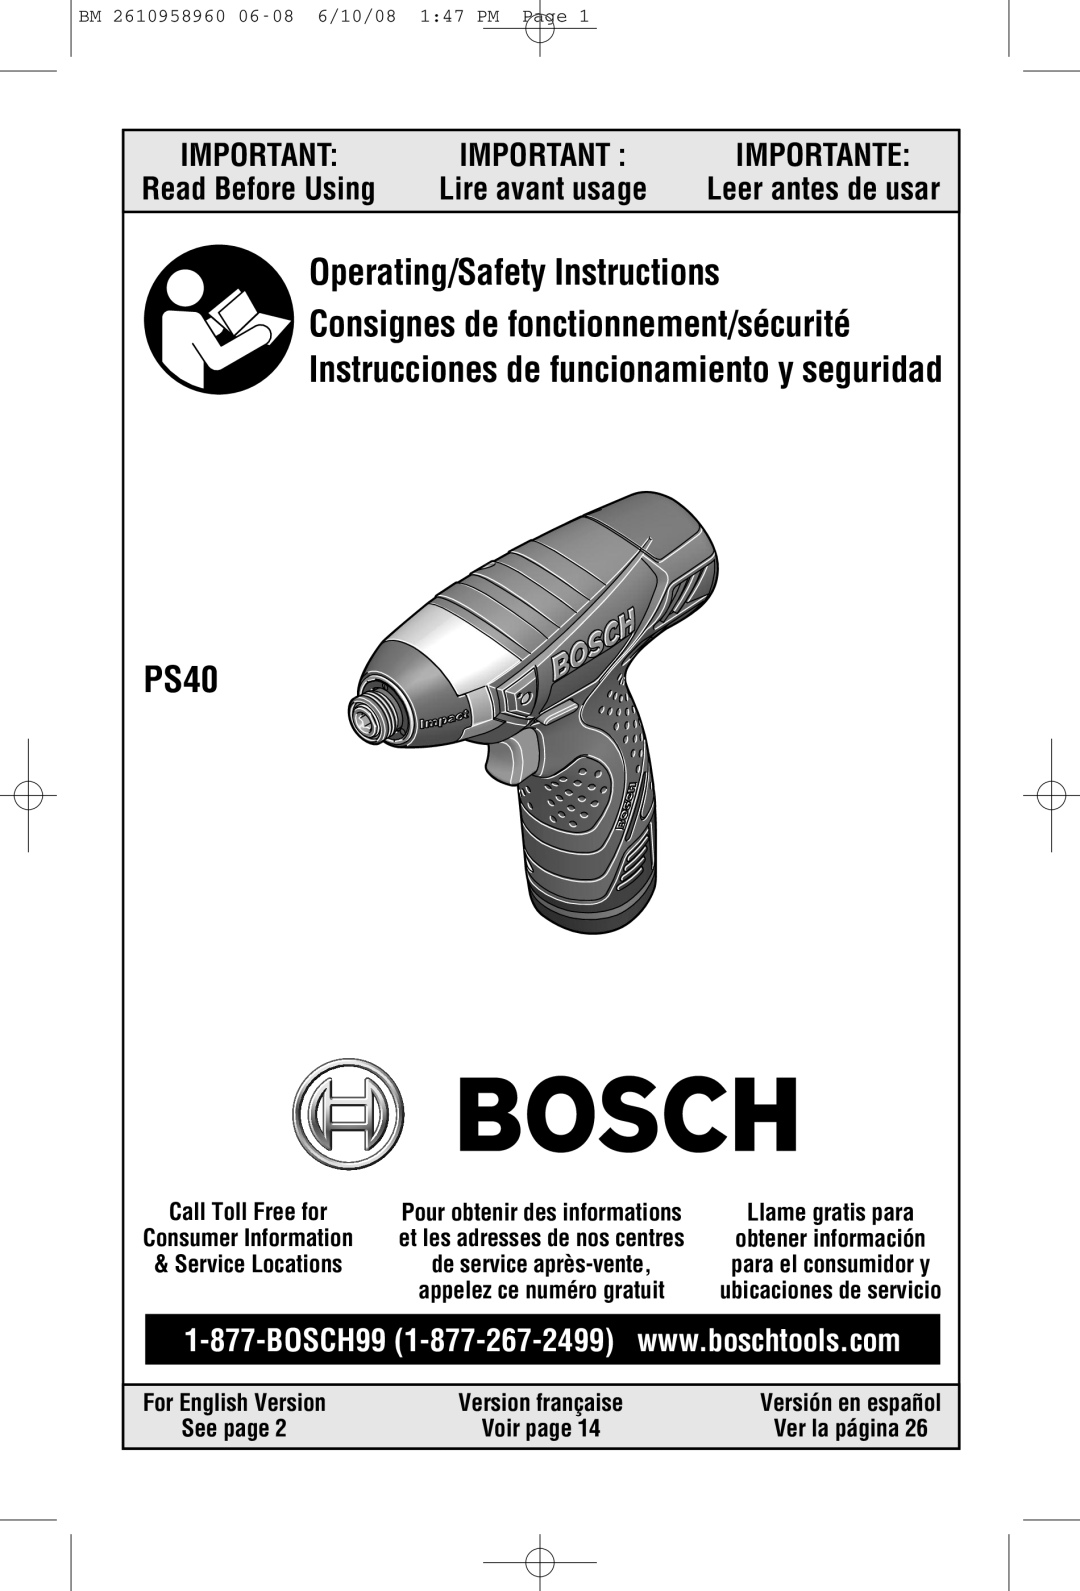 Bosch Power Tools PS40B manual Leer antes de usar, For English Version, Version française, Versión en español, See page 